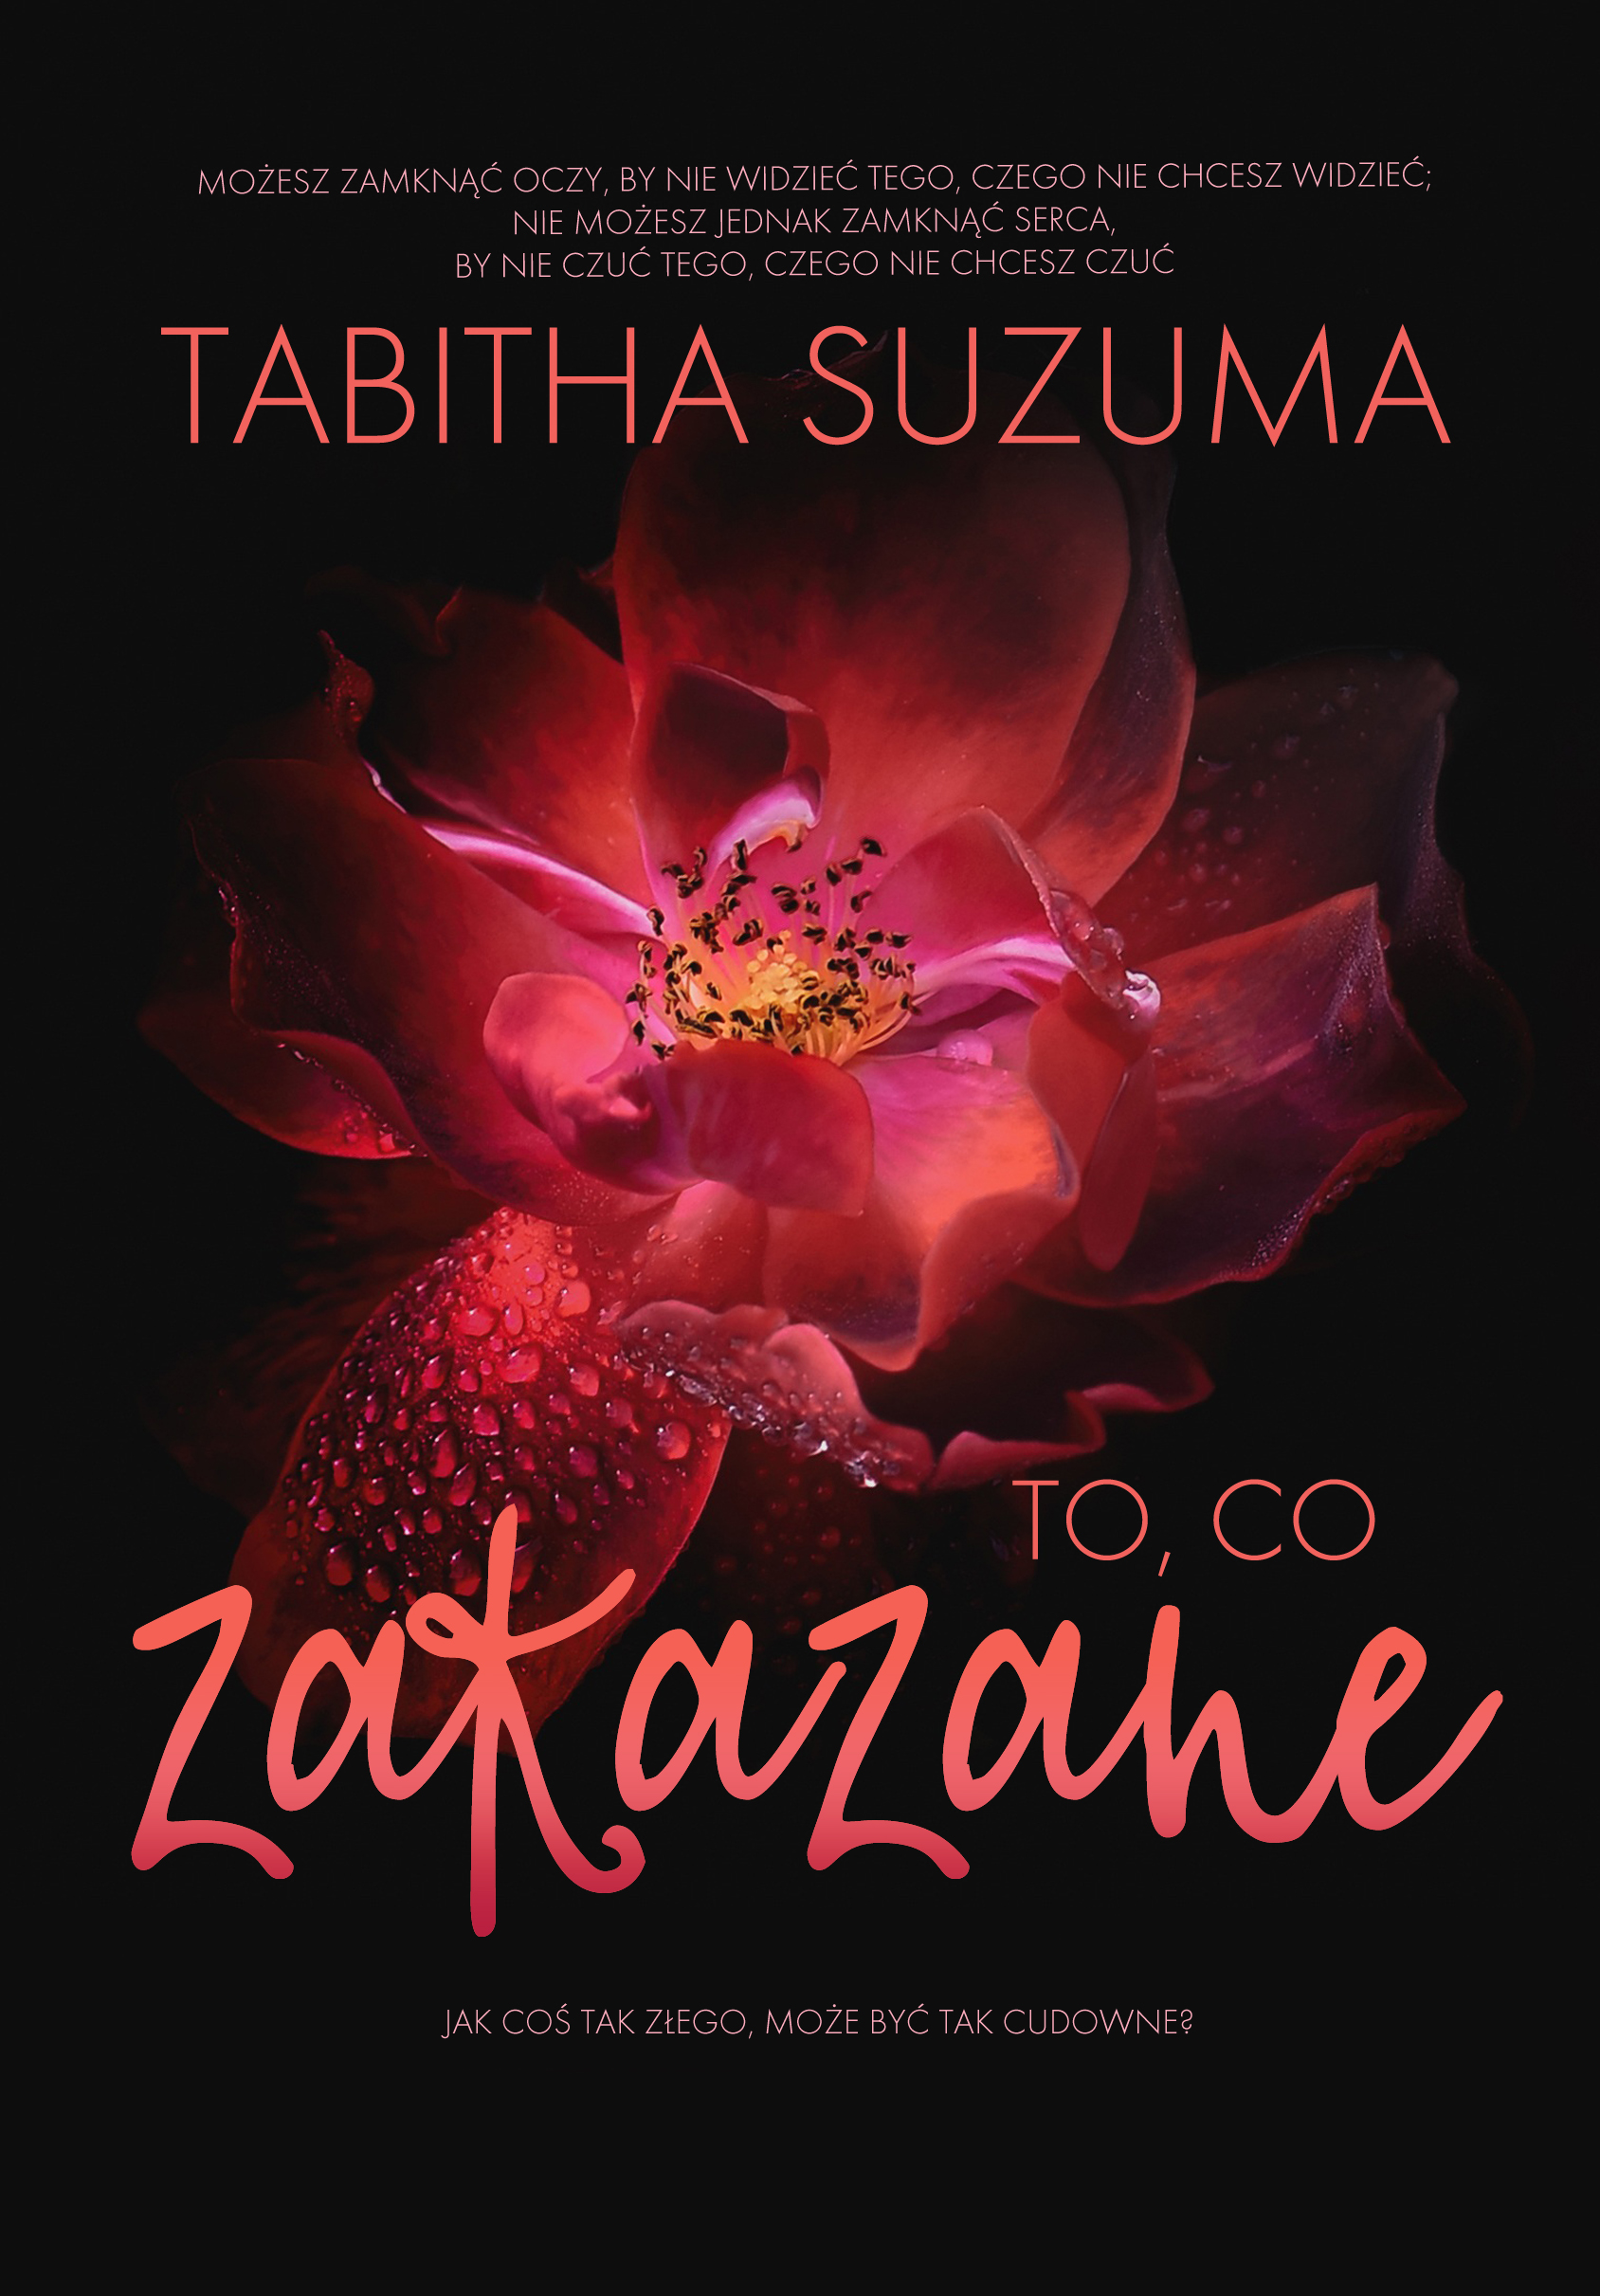 "To, co zakazane", Tabitha Suzuma